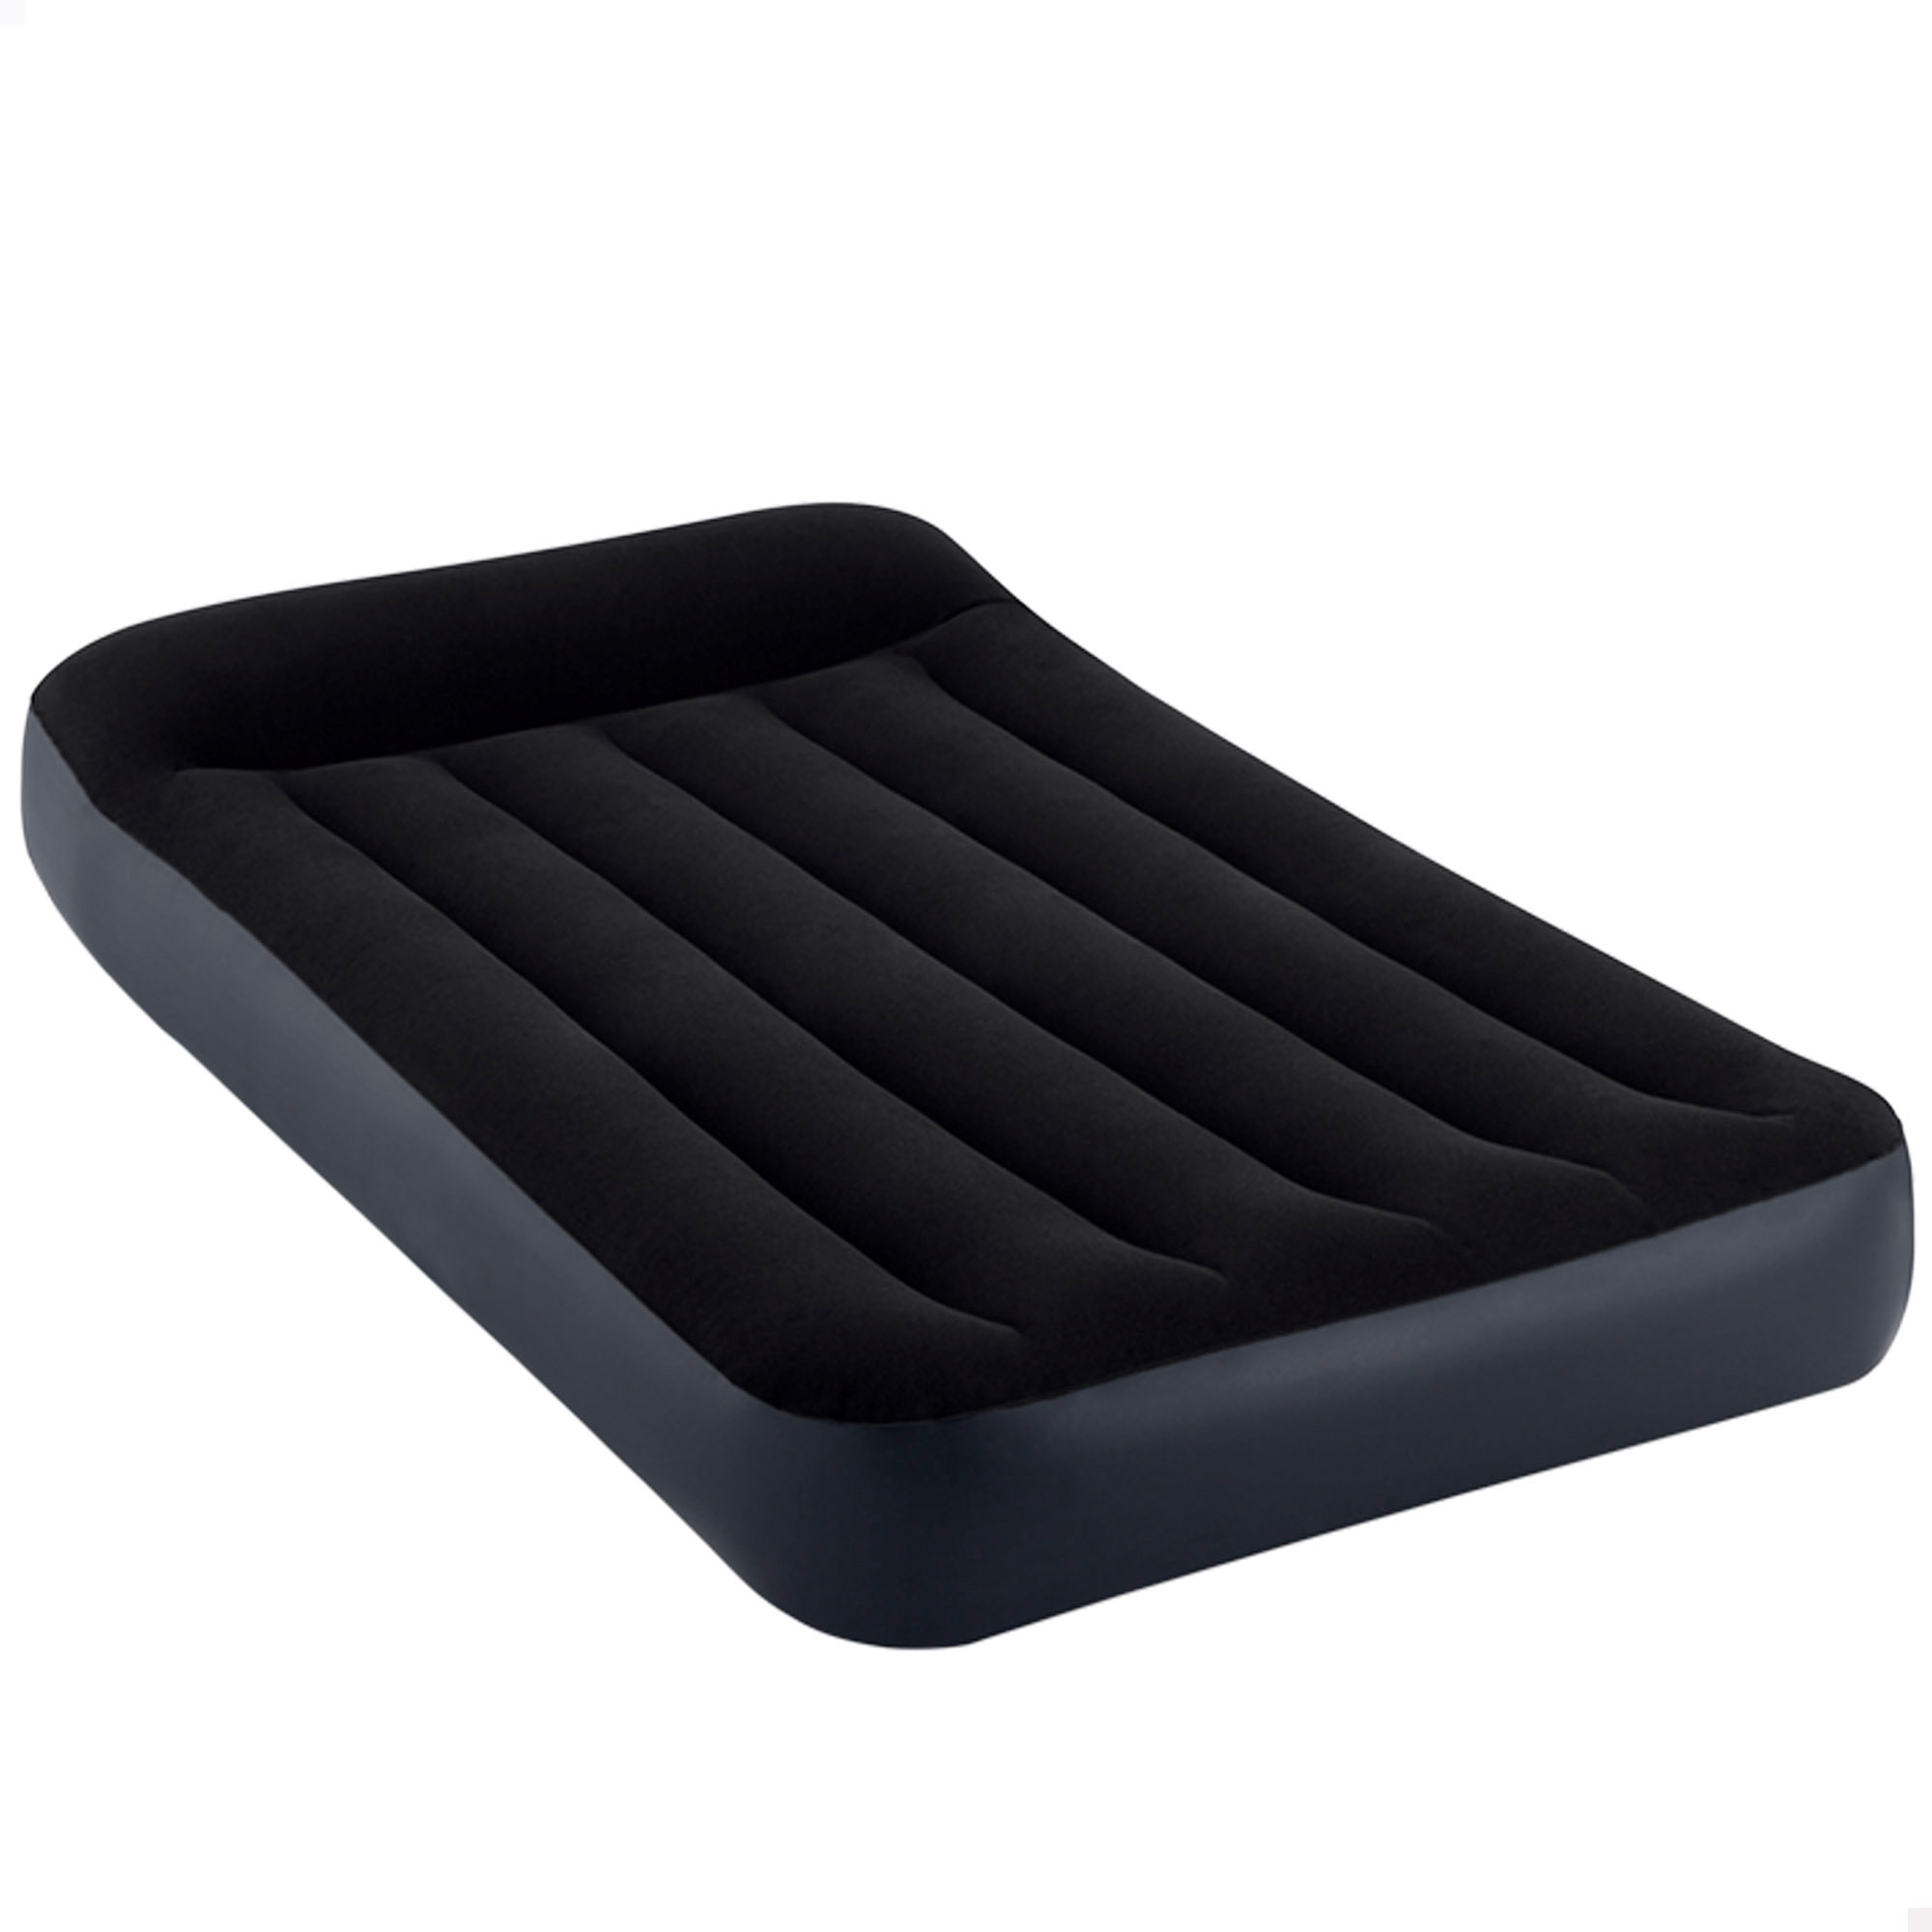 Intex - Cama de aire Dura-Beam Standard INTEX Pillow Rest Classic, Colchón hinchable Intex, Colchón Intex, Colchones hinchables, Altura 25 cm